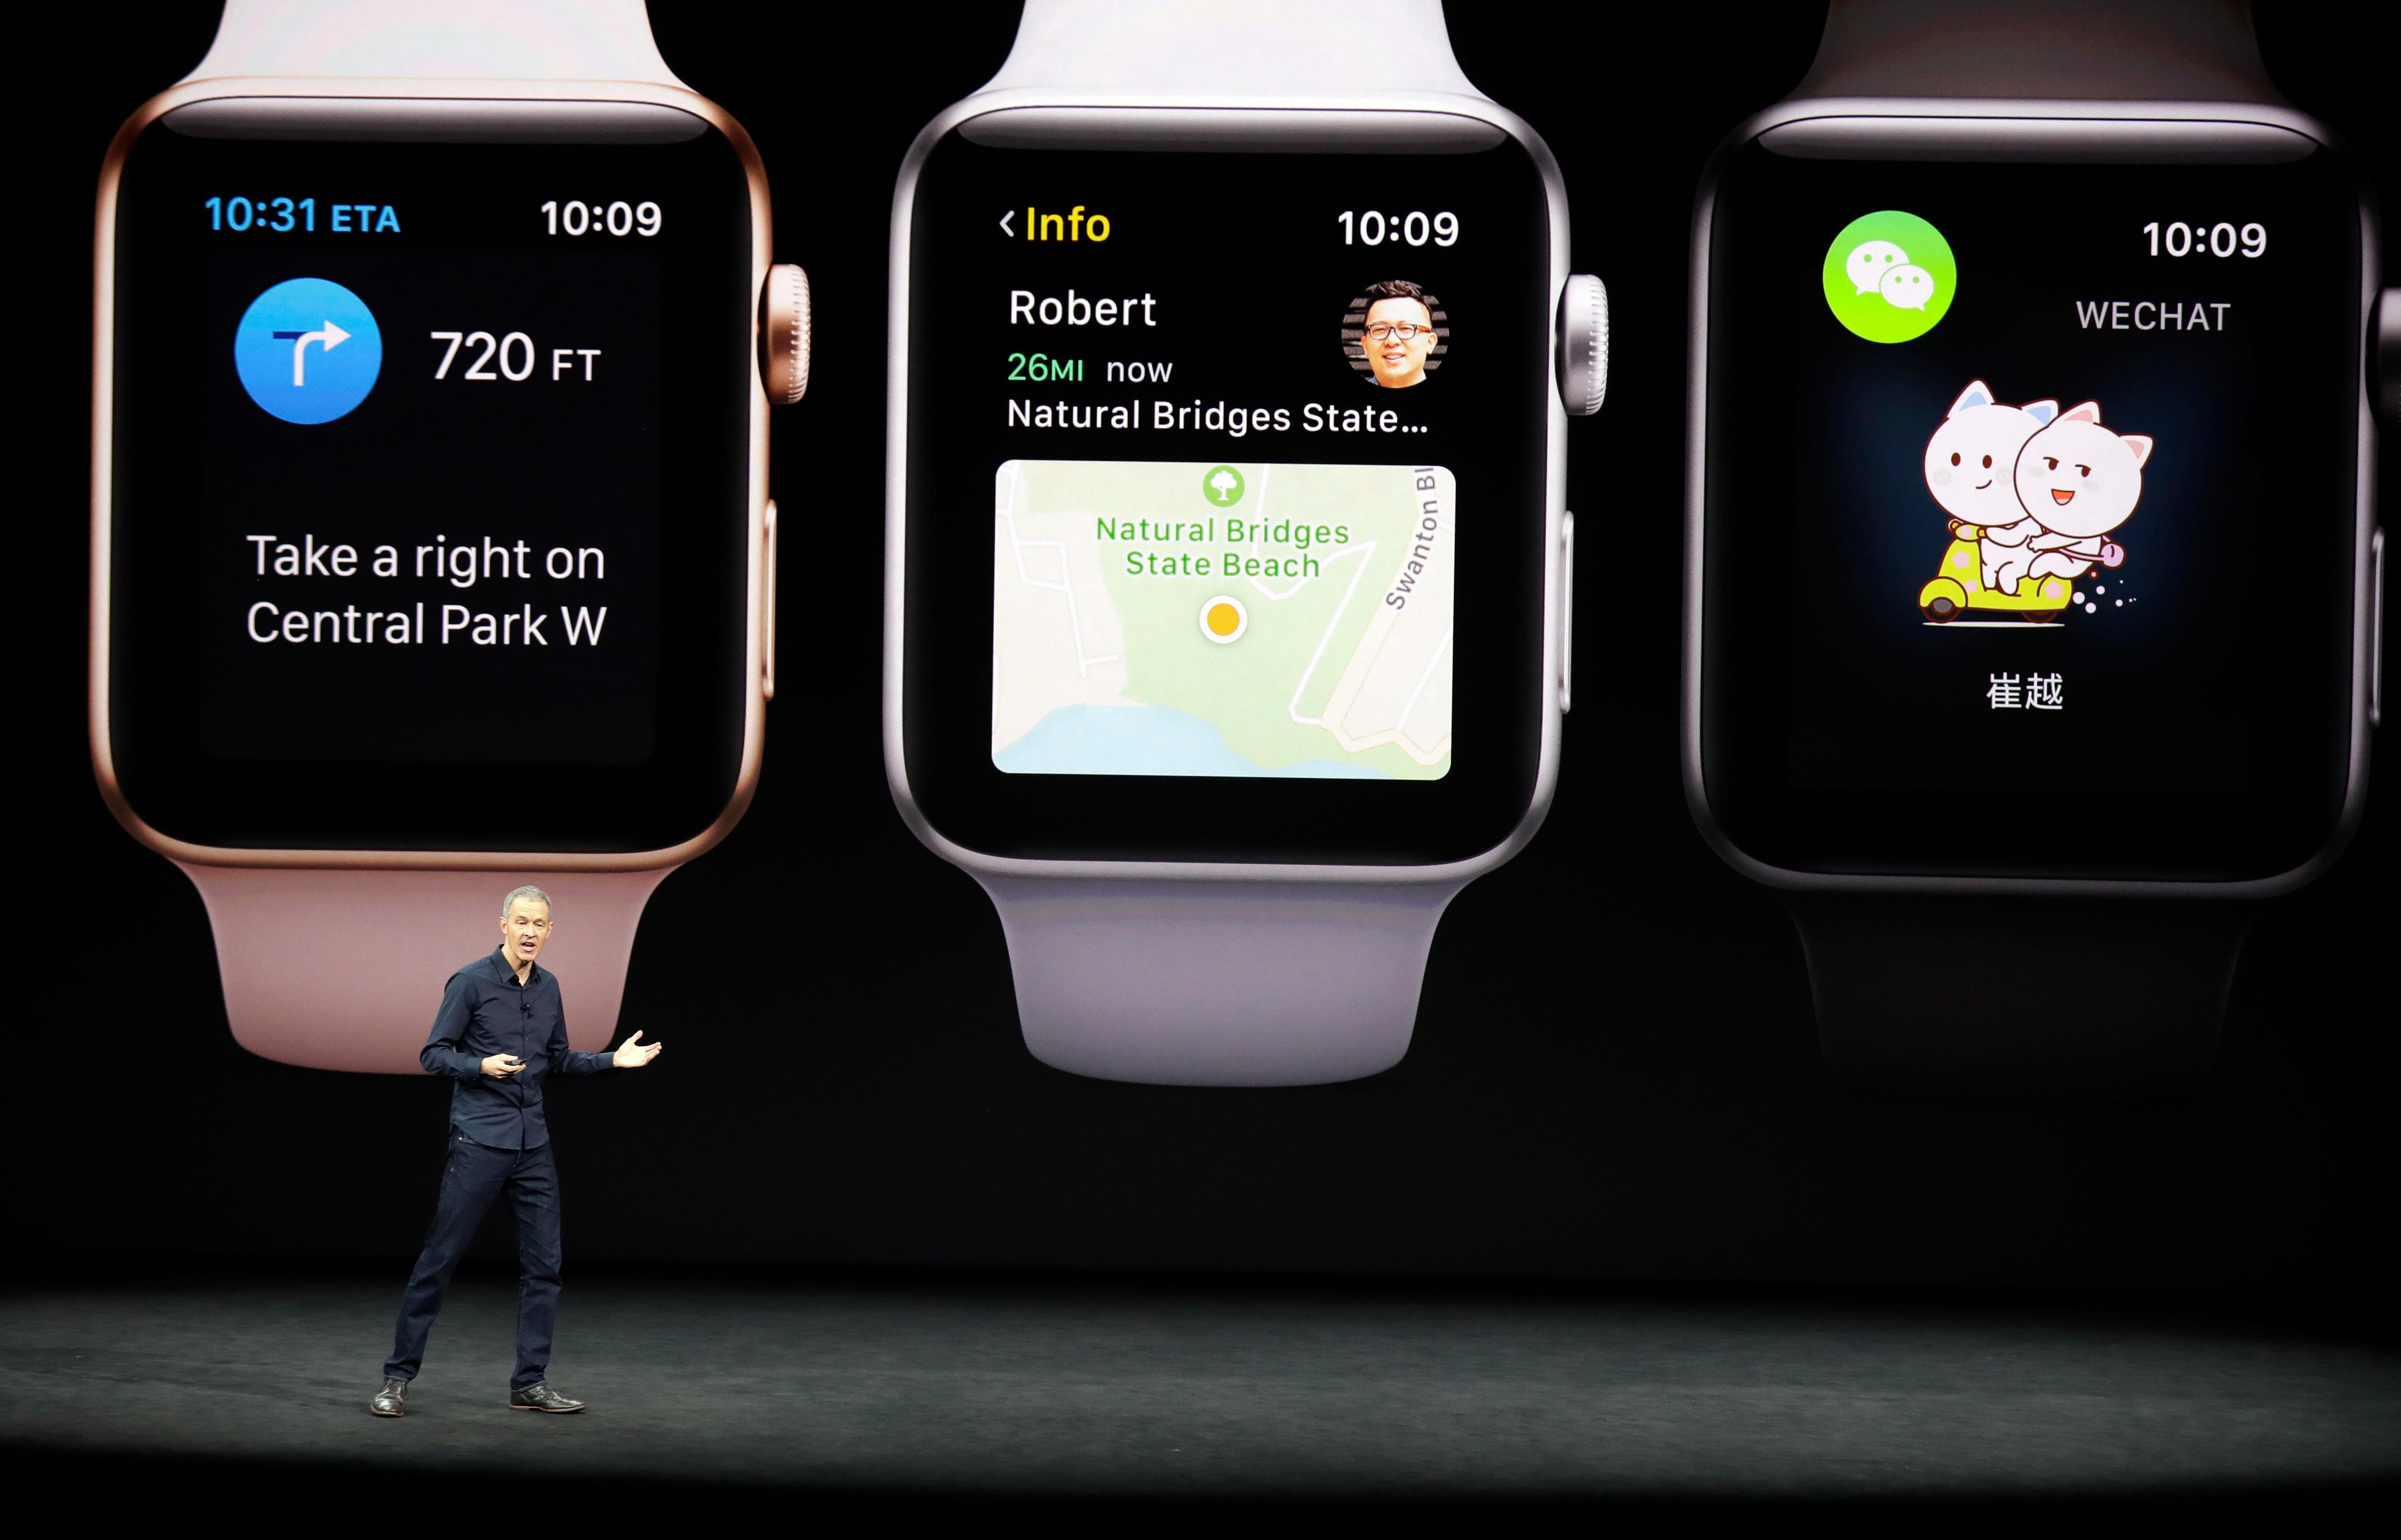  Apple menolak untuk mengatakan berapa banyak jam tangan yang dijualnya, tetapi mengklaim sebagai salah satu produsen terbesar